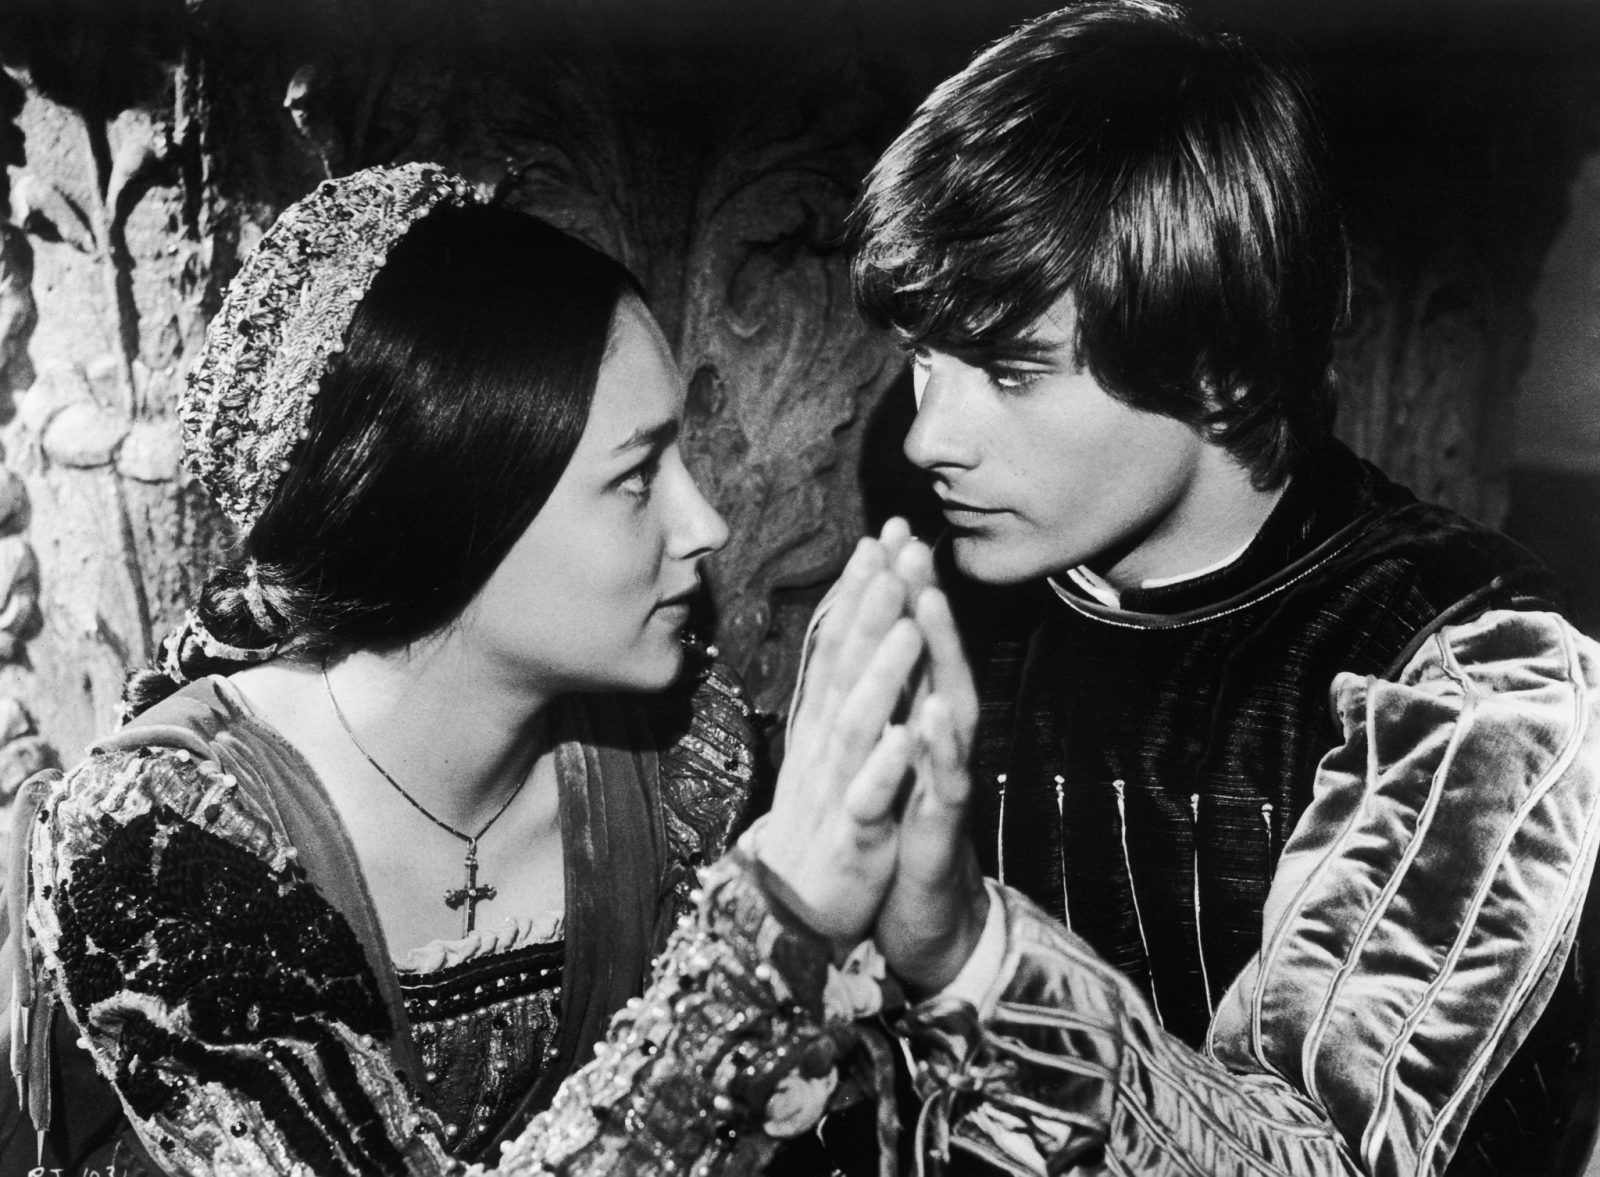 История любви Ромео и Джульетты... Из 800 молодых актрис, претендовавших на роль Джульетты, и 300 на роль Ромео режиссер выбрал 16-летнюю красавицу Оливию Хасси и 17-летнего Леонарда Уайтинга